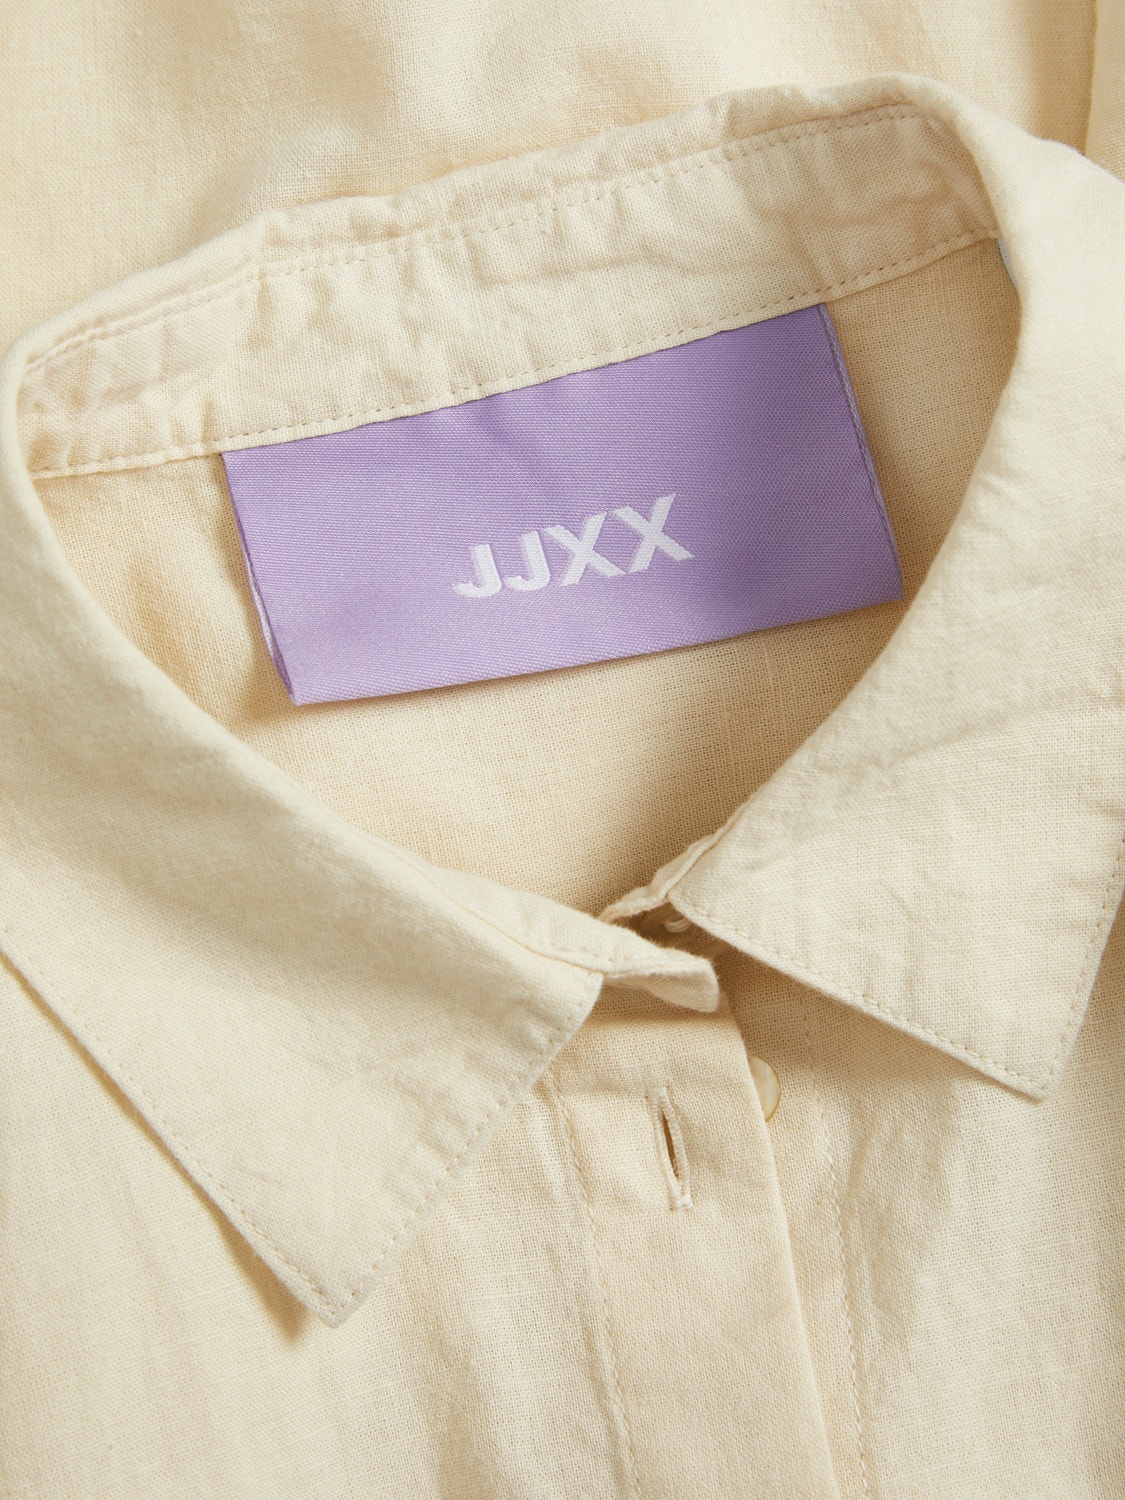 JJXX Shop The Look - 2304202425